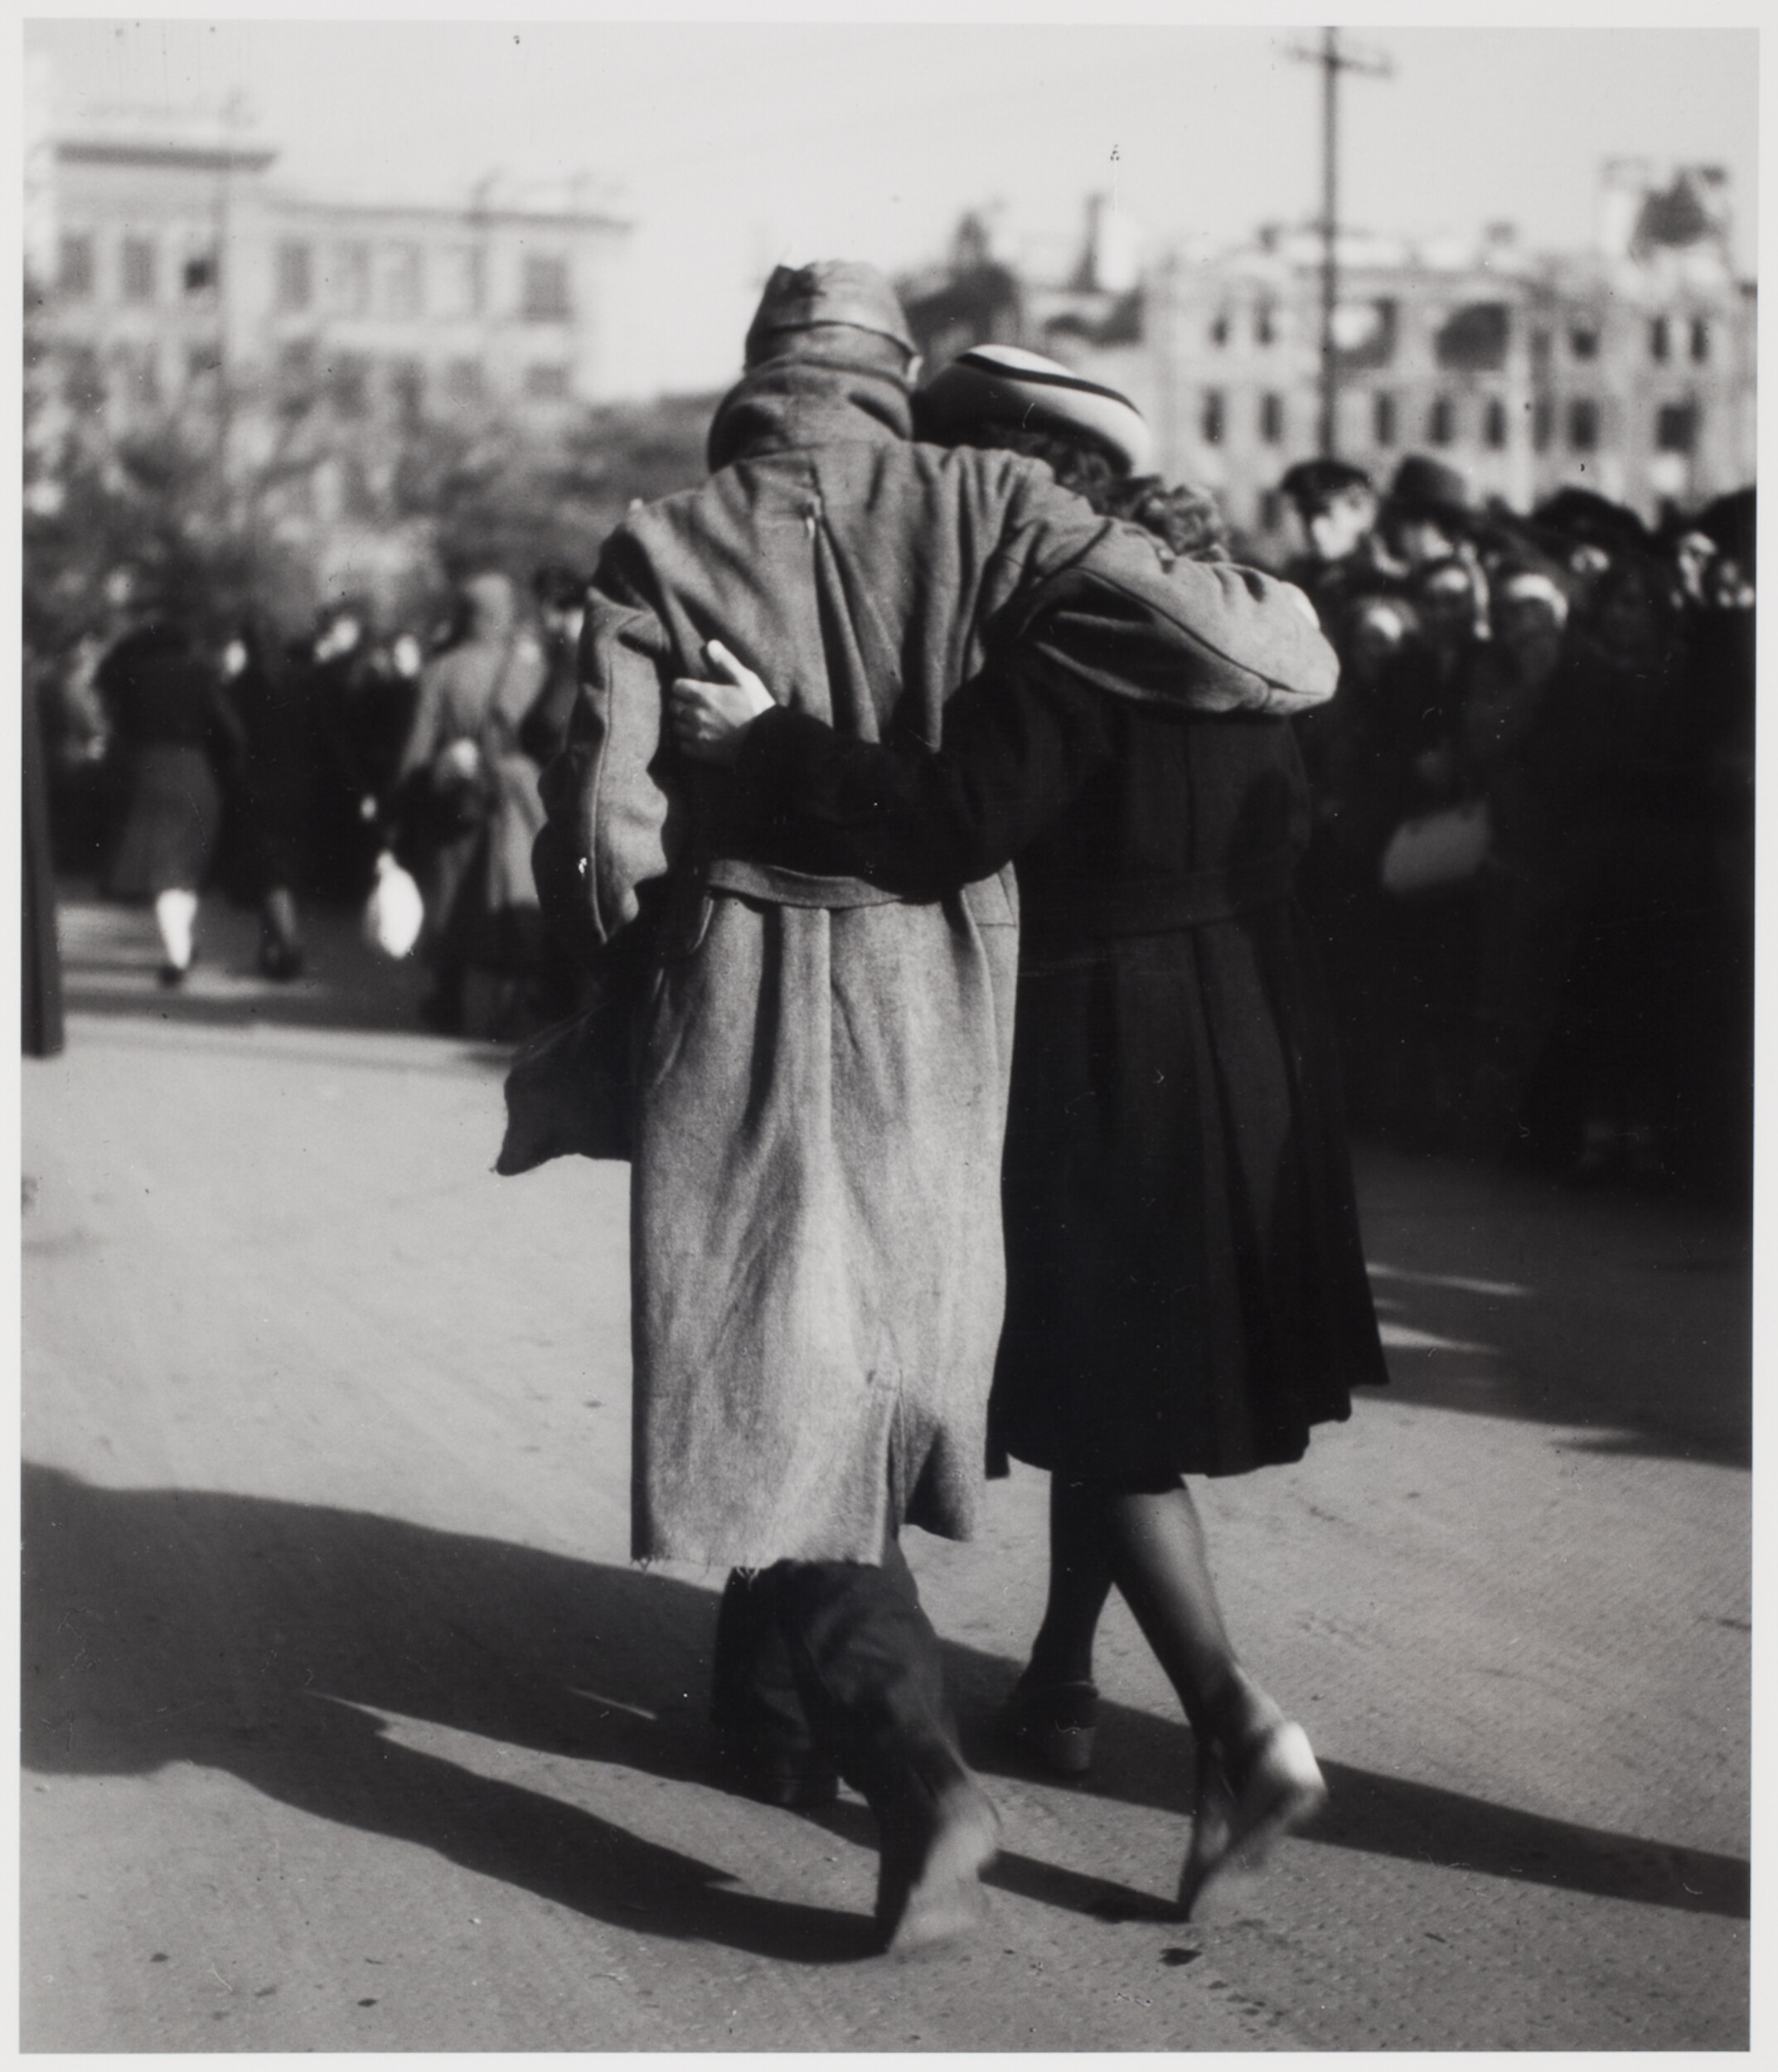 Возвращение военнопленных, Вена, 1947. Фотограф Эрнст Хаас